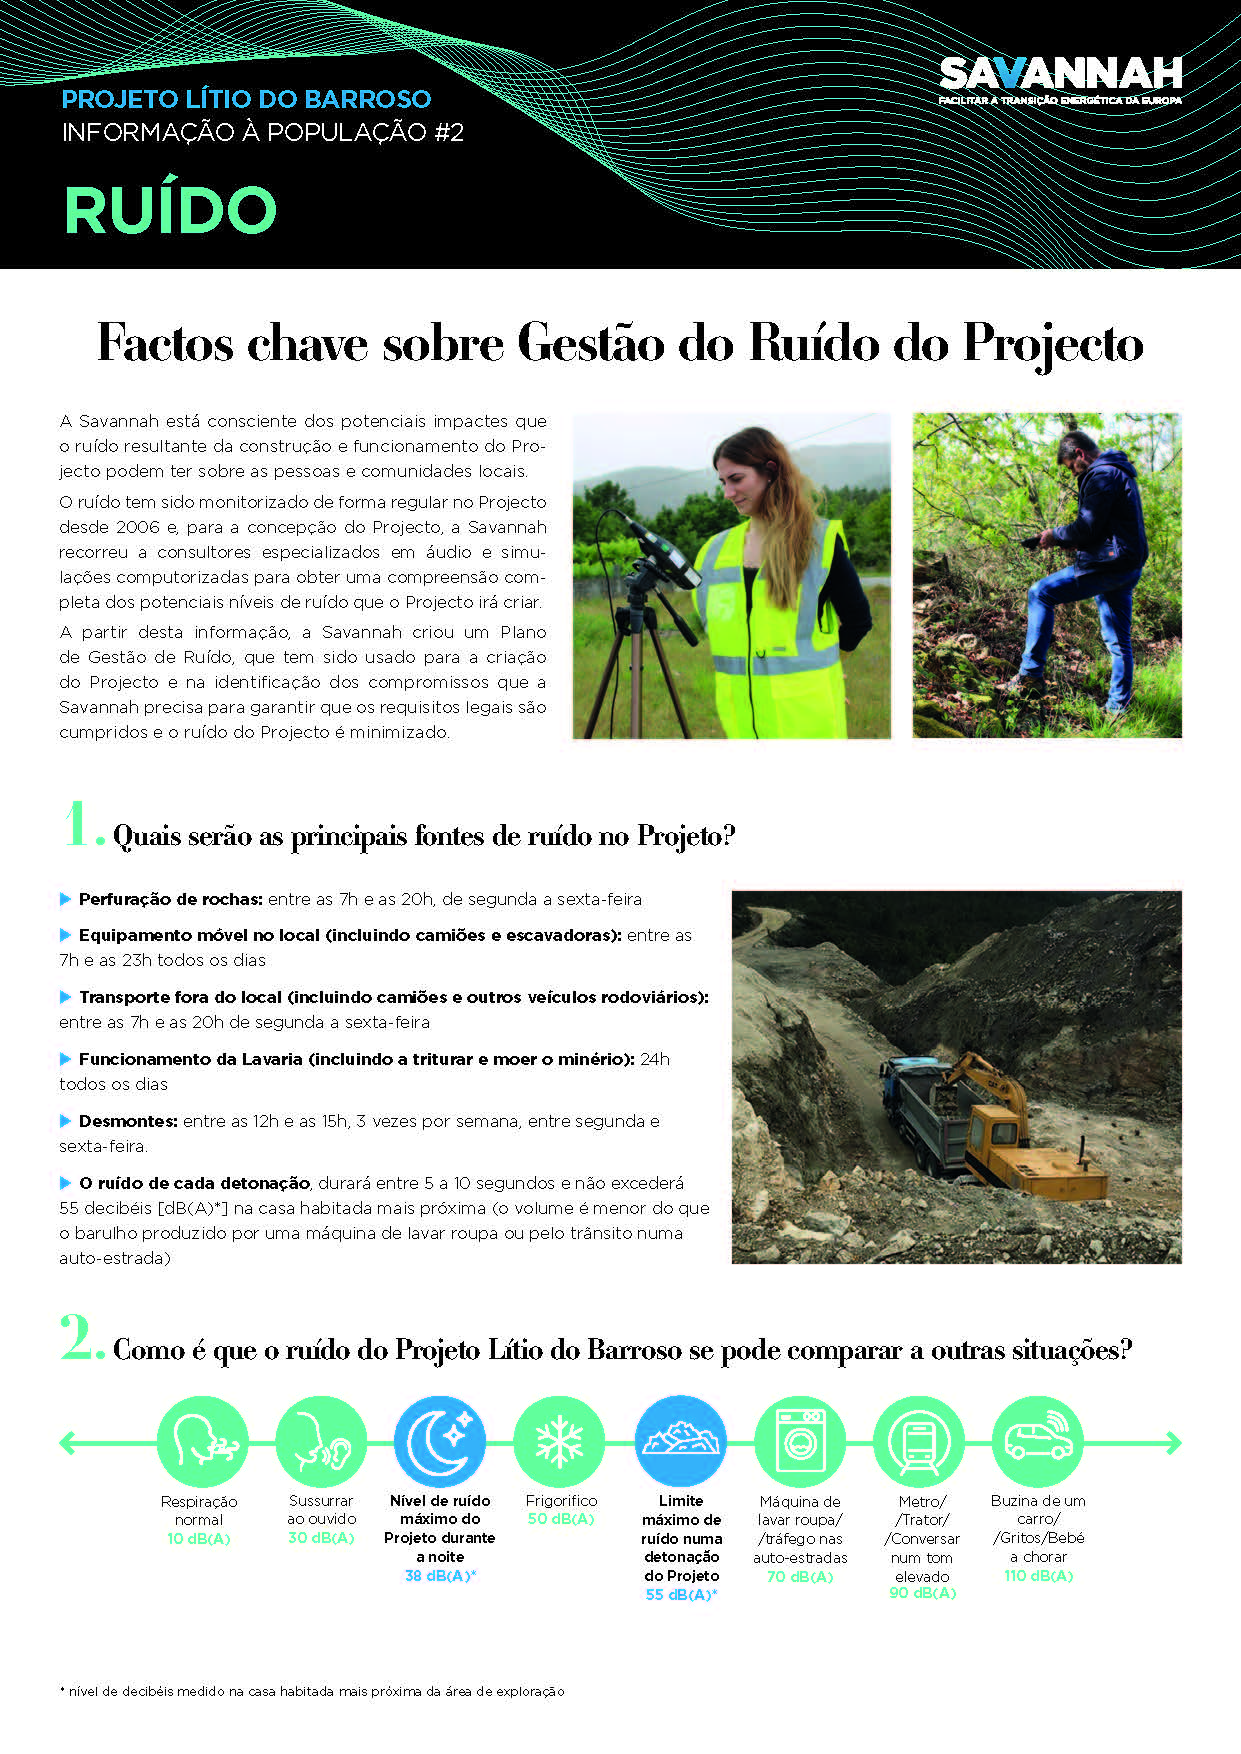 2. Folha Informativa sobre o Projecto Lítio do Barroso - Ruído